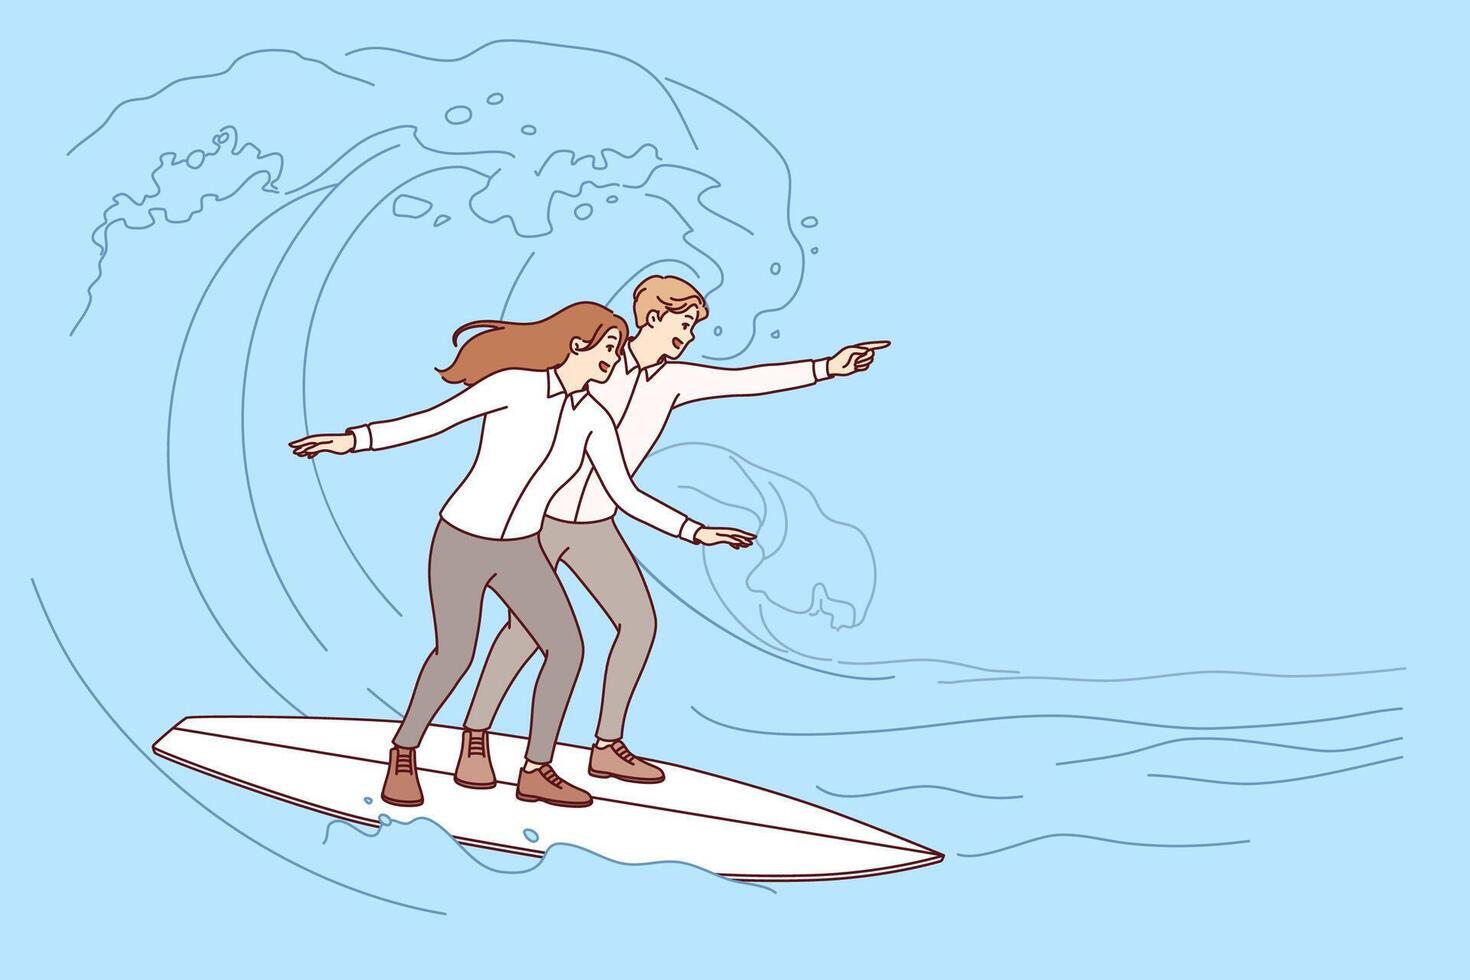 negocio socios tomar riesgos a lograr éxito por montando tablas de surf en mar olas vector